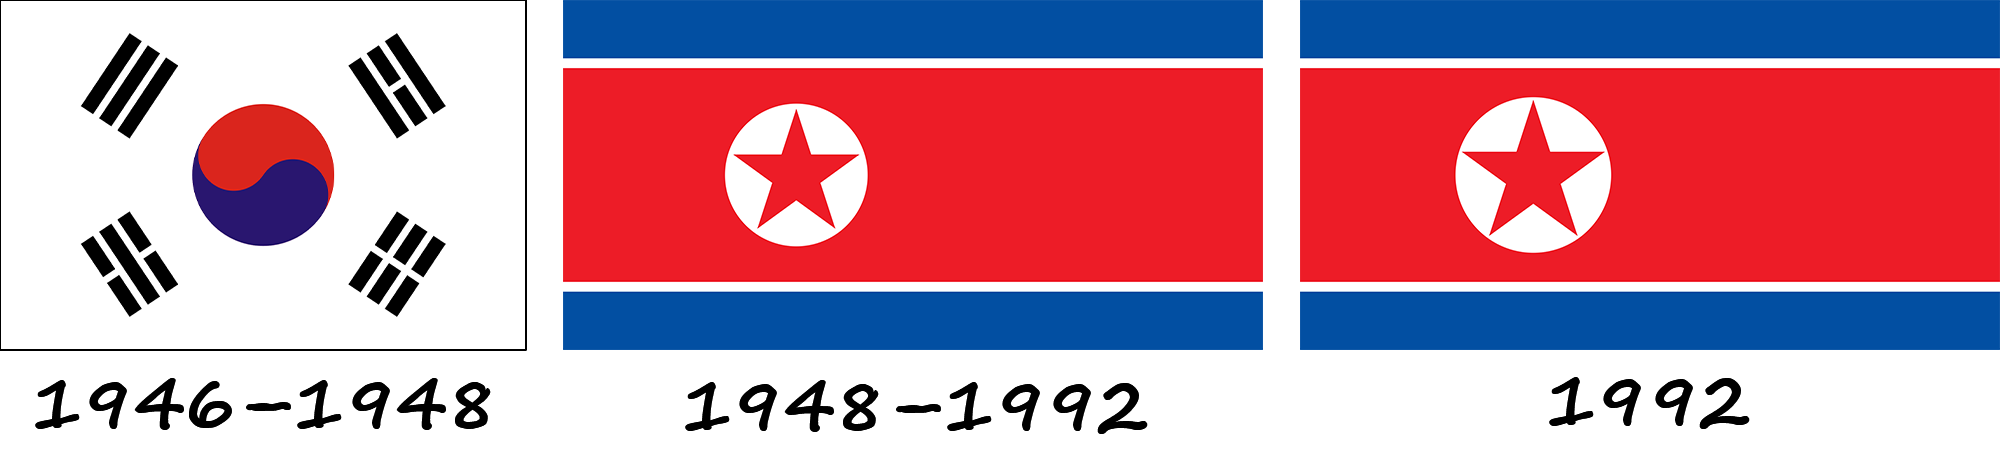 Історія прапору Північної Кореї